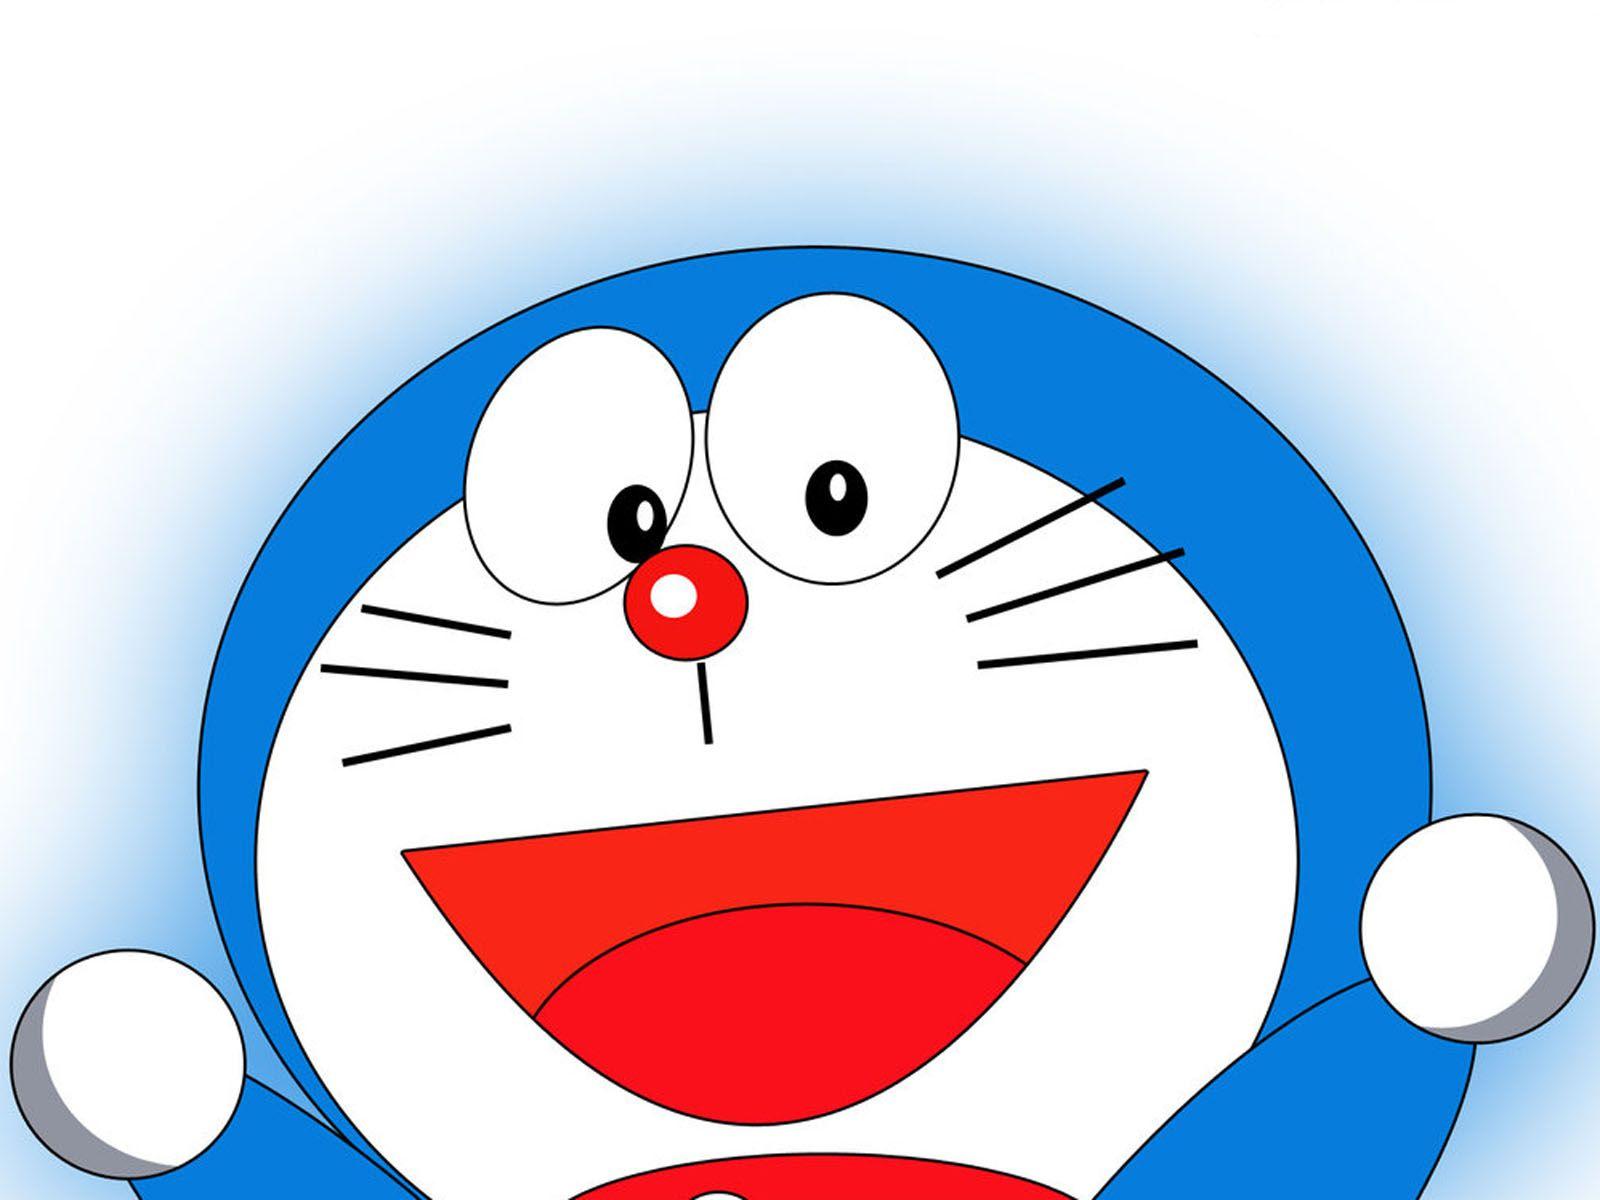 Hình nền máy tính Doraemon sẽ làm cho màn hình của bạn trở nên đáng yêu và tinh nghịch hơn bao giờ hết. Tải xuống bộ sưu tập hình nền máy tính Doraemon từ trang web chúng tôi và cập nhật ngay hôm nay!